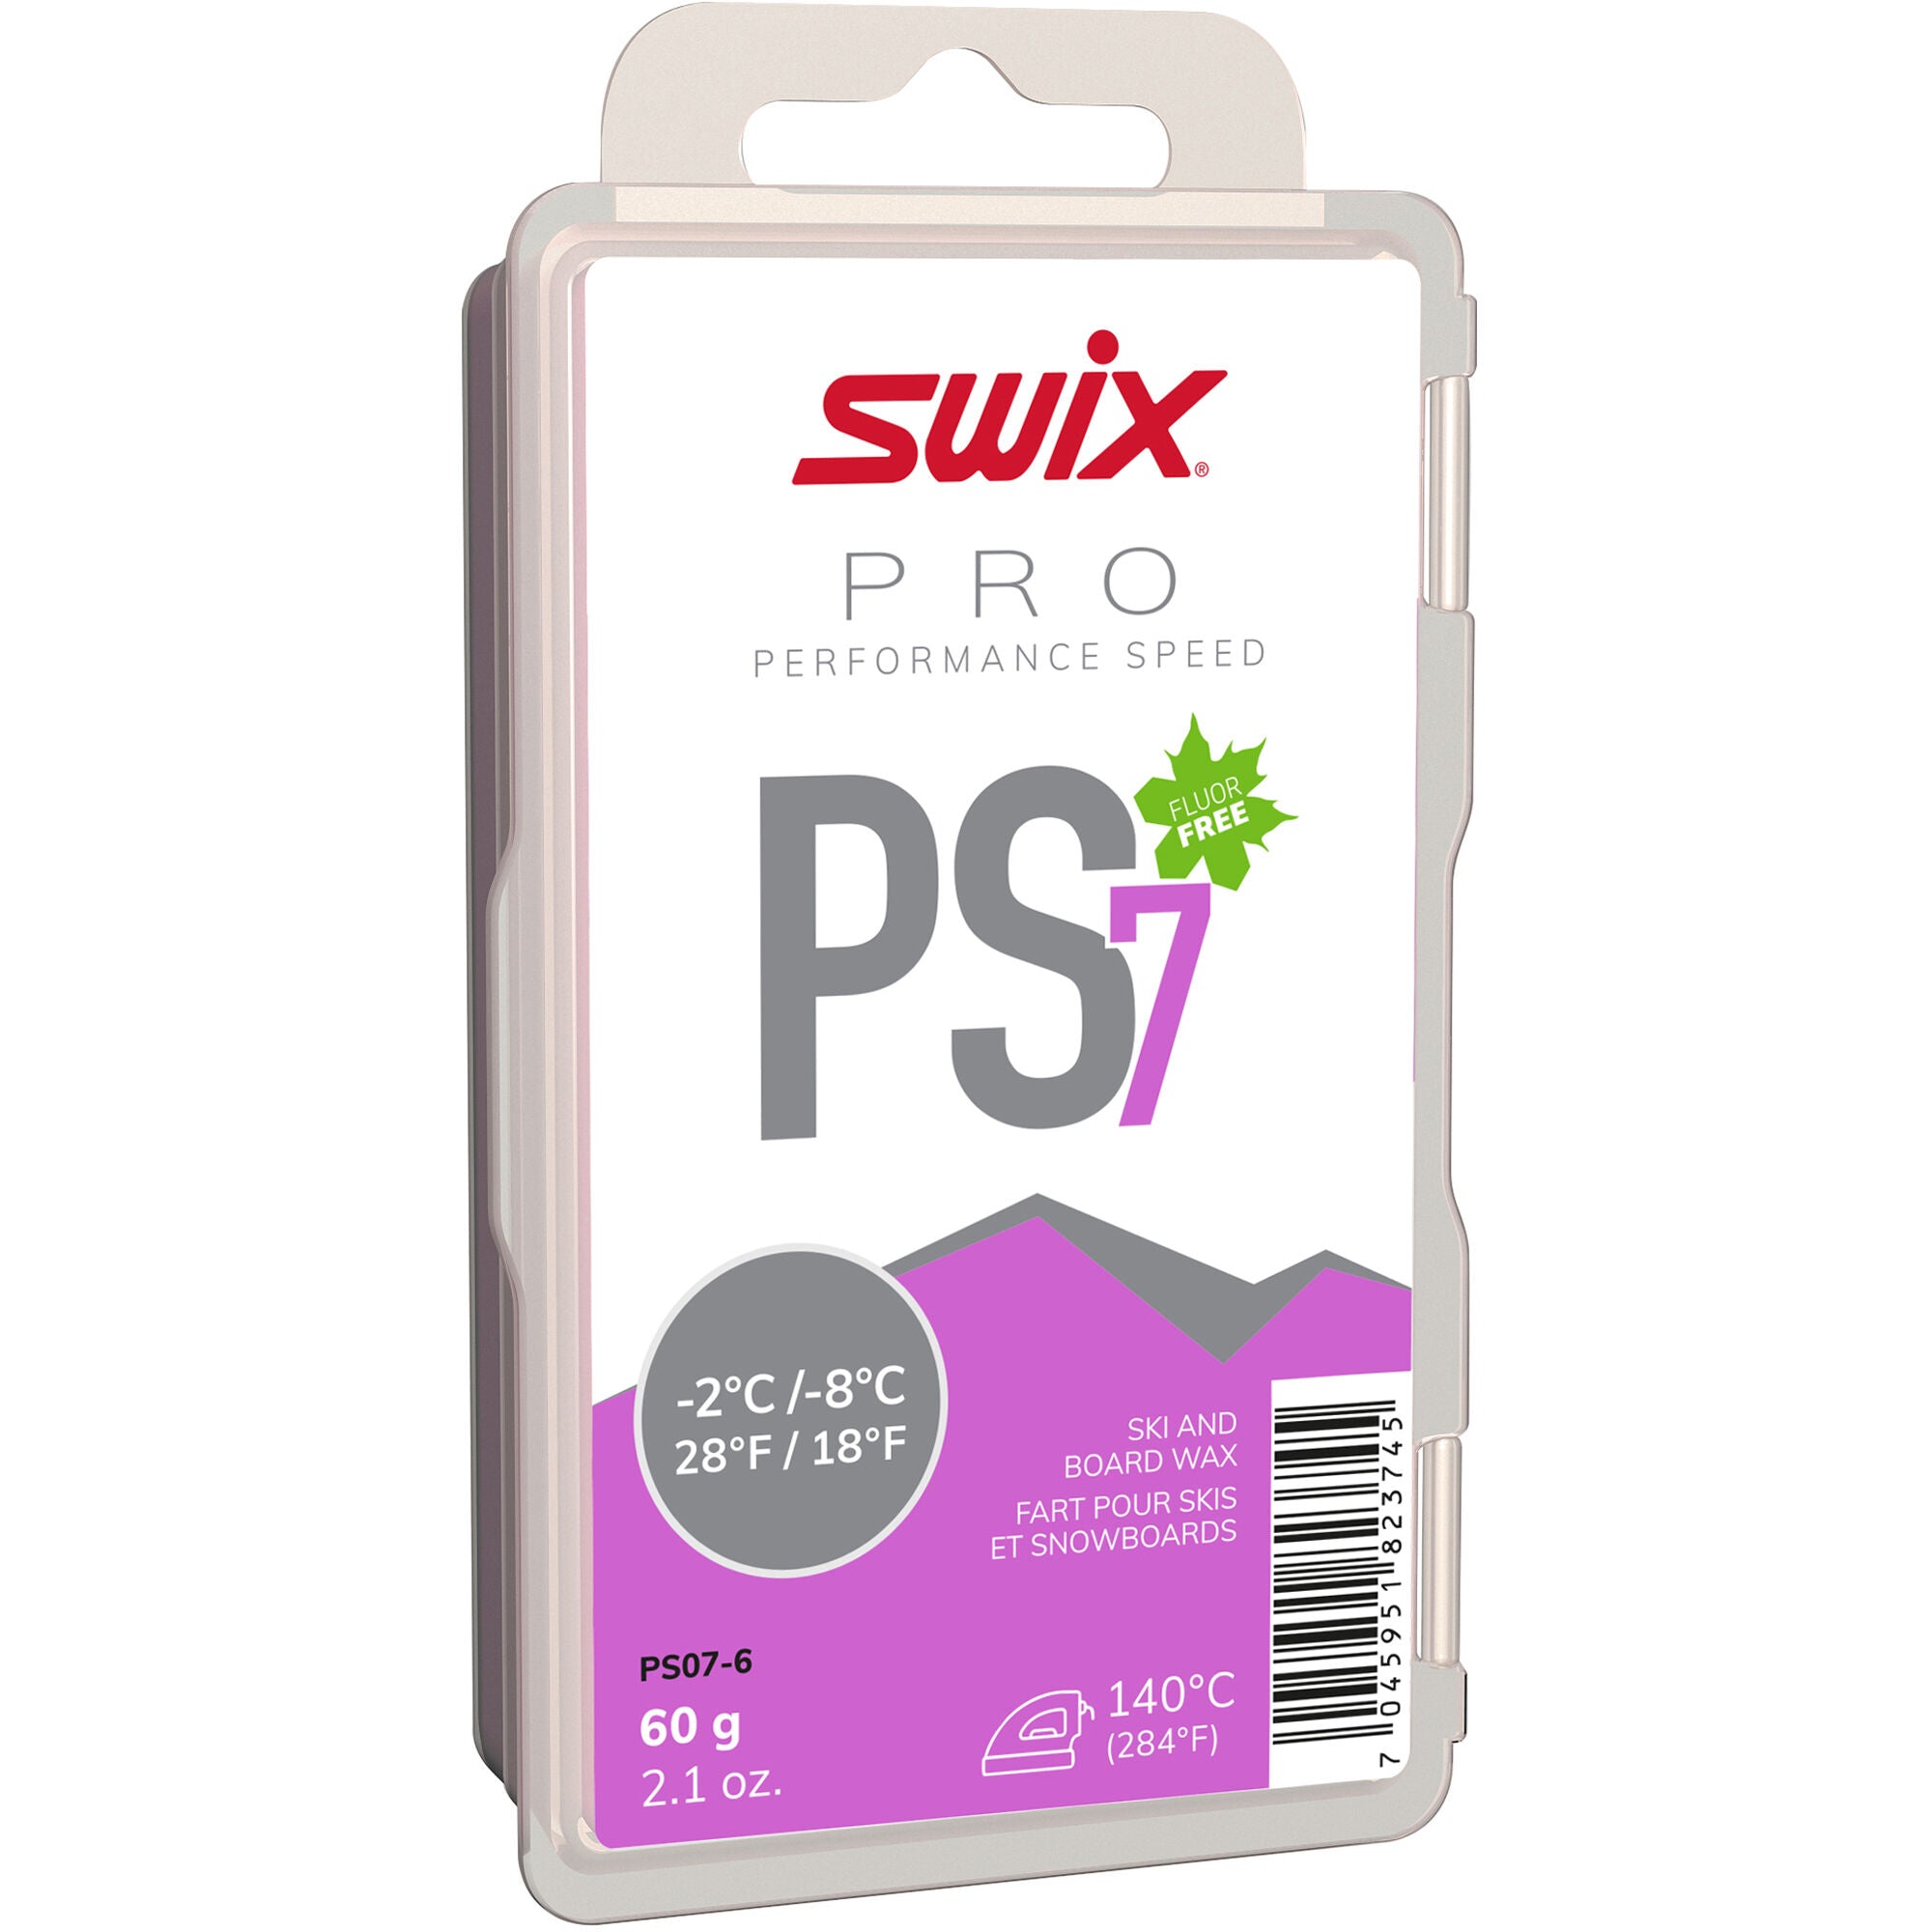 Swix Ps7 Violet - Ascent Outdoors LLC